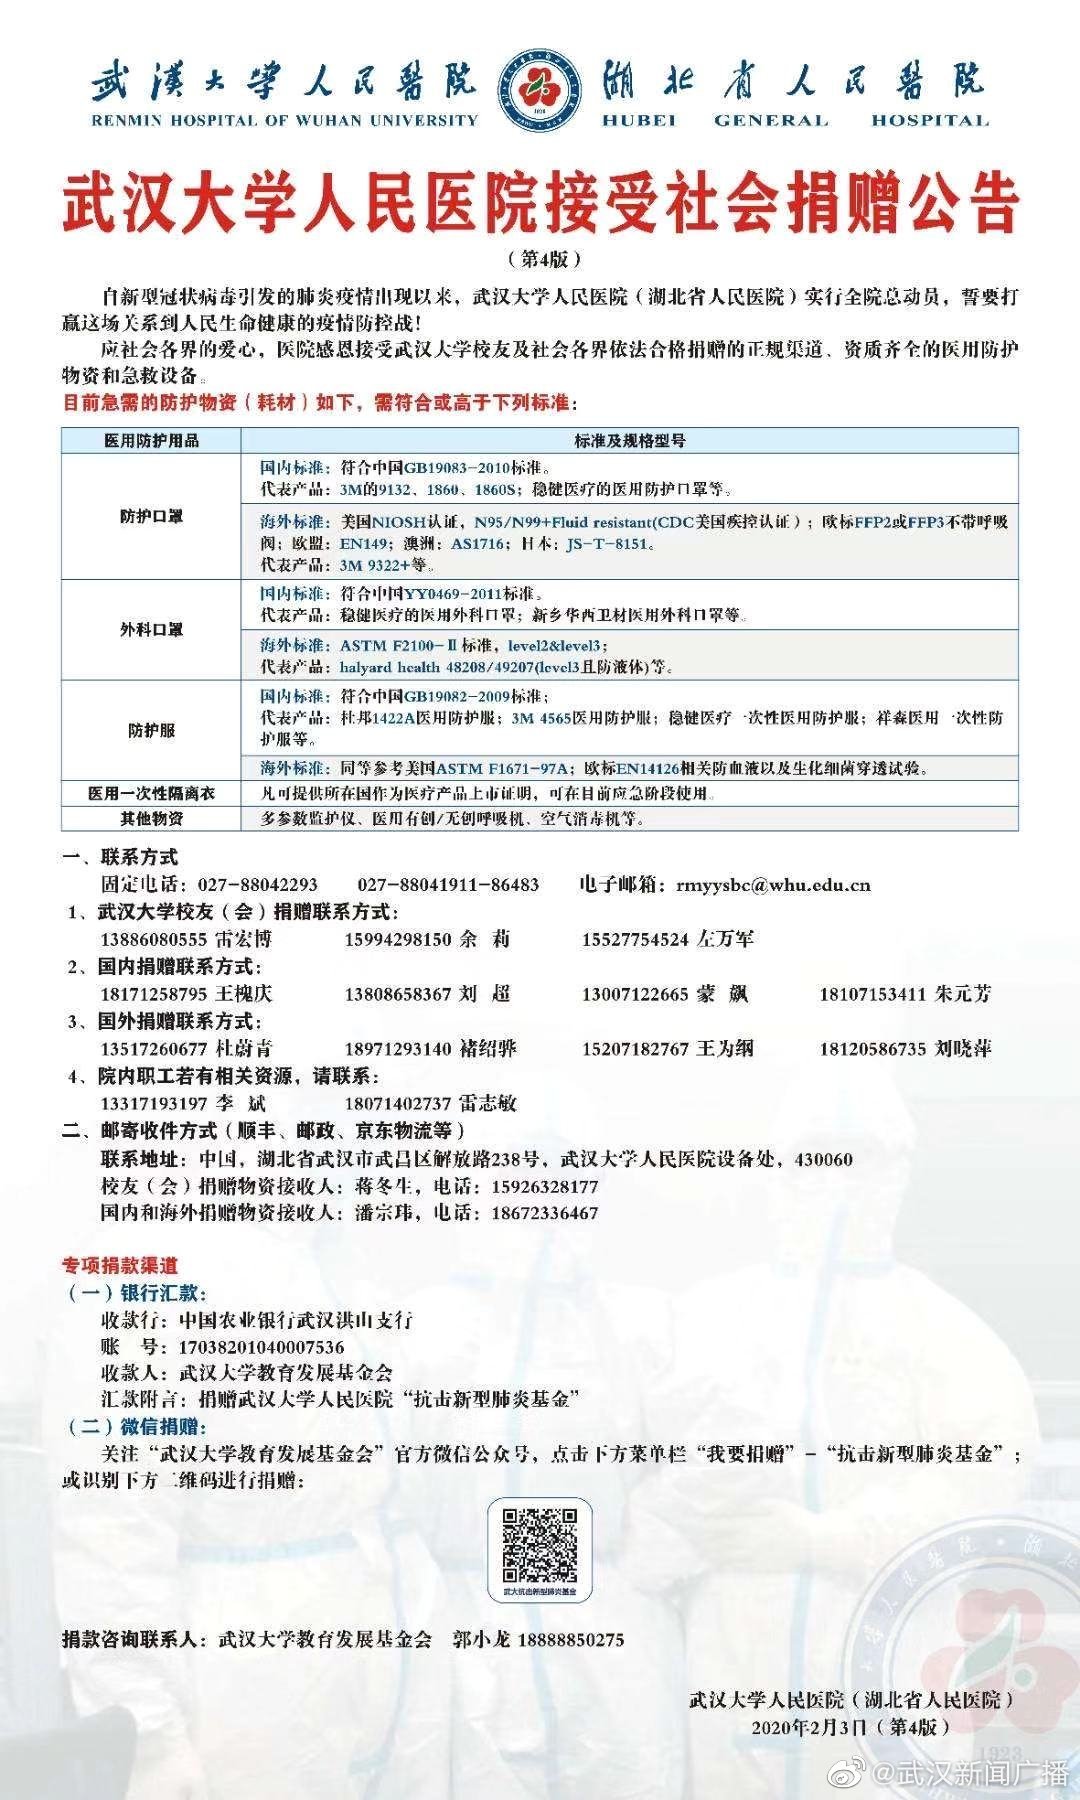 23武汉大学人民医院接受社会捐赠公告.jpg